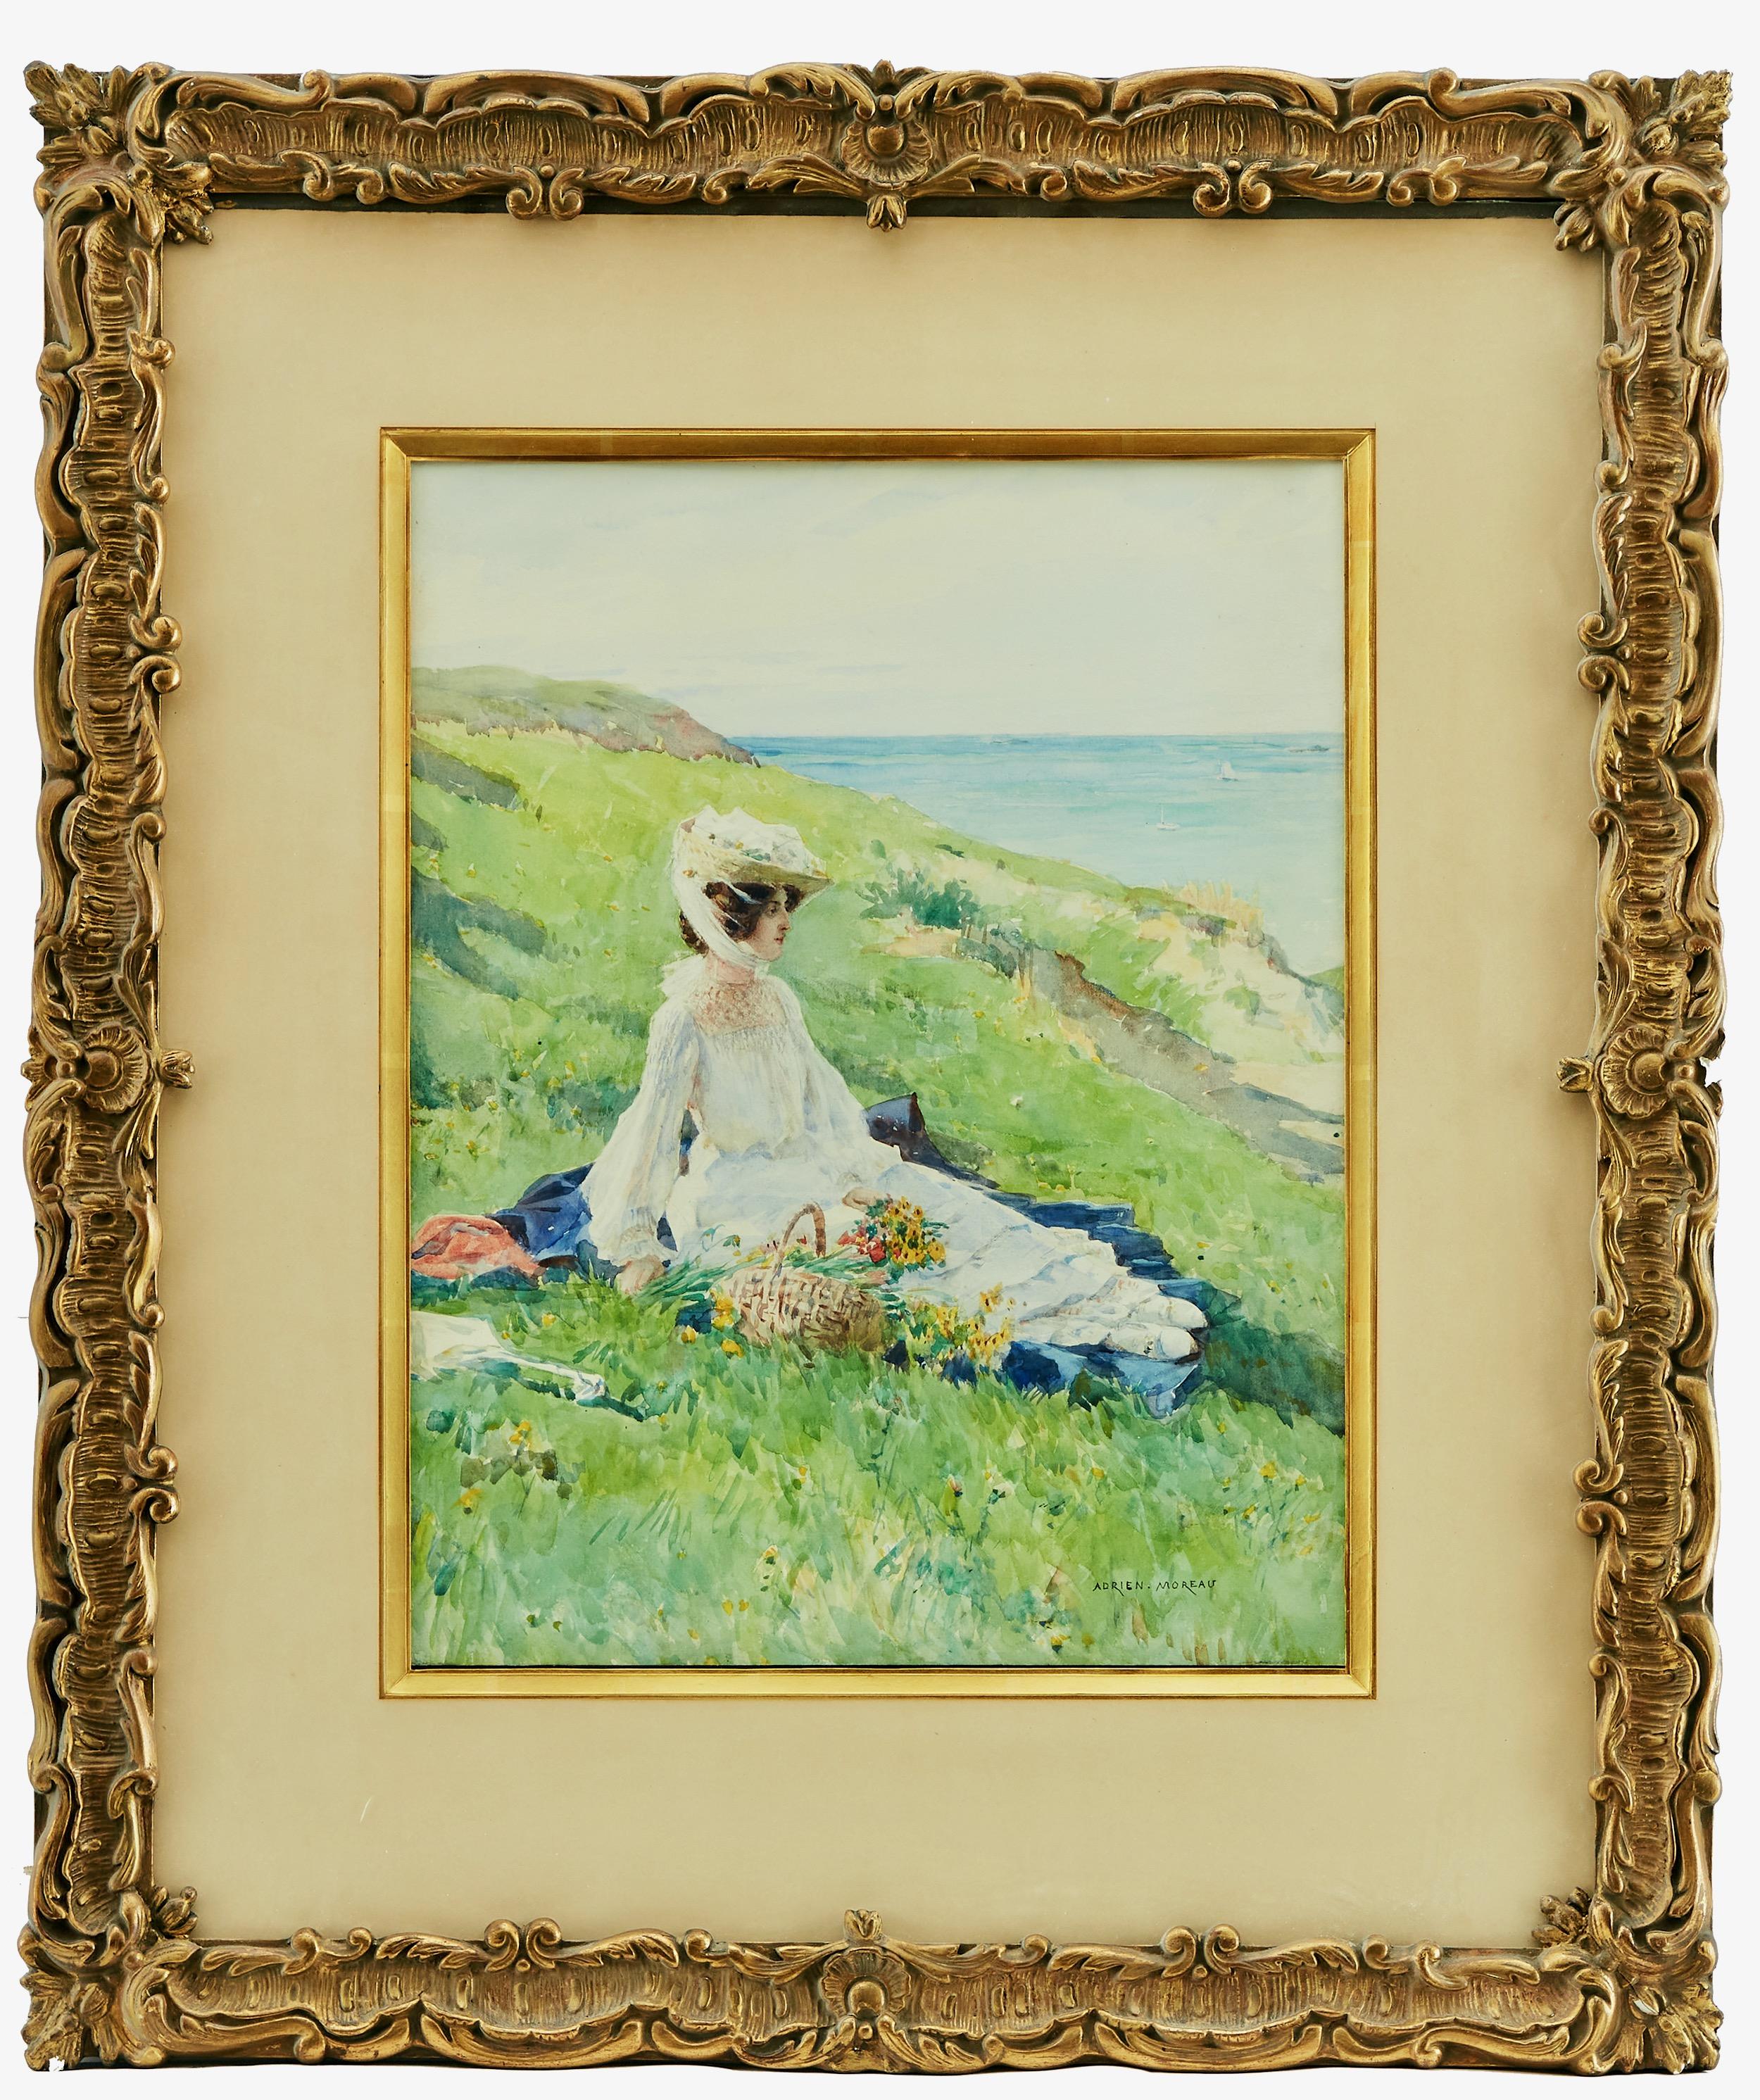 Ein schönes Aquarell von Adrien Moreau (1843-1906), das eine Frau mit frisch gepflückten Blumen in einem Korb zeigt, die sich im Gras am Meer ausruht. Die Farben sind kräftig und es ist in einem schönen vergoldeten Rahmen montiert. 

Adrien Moreau